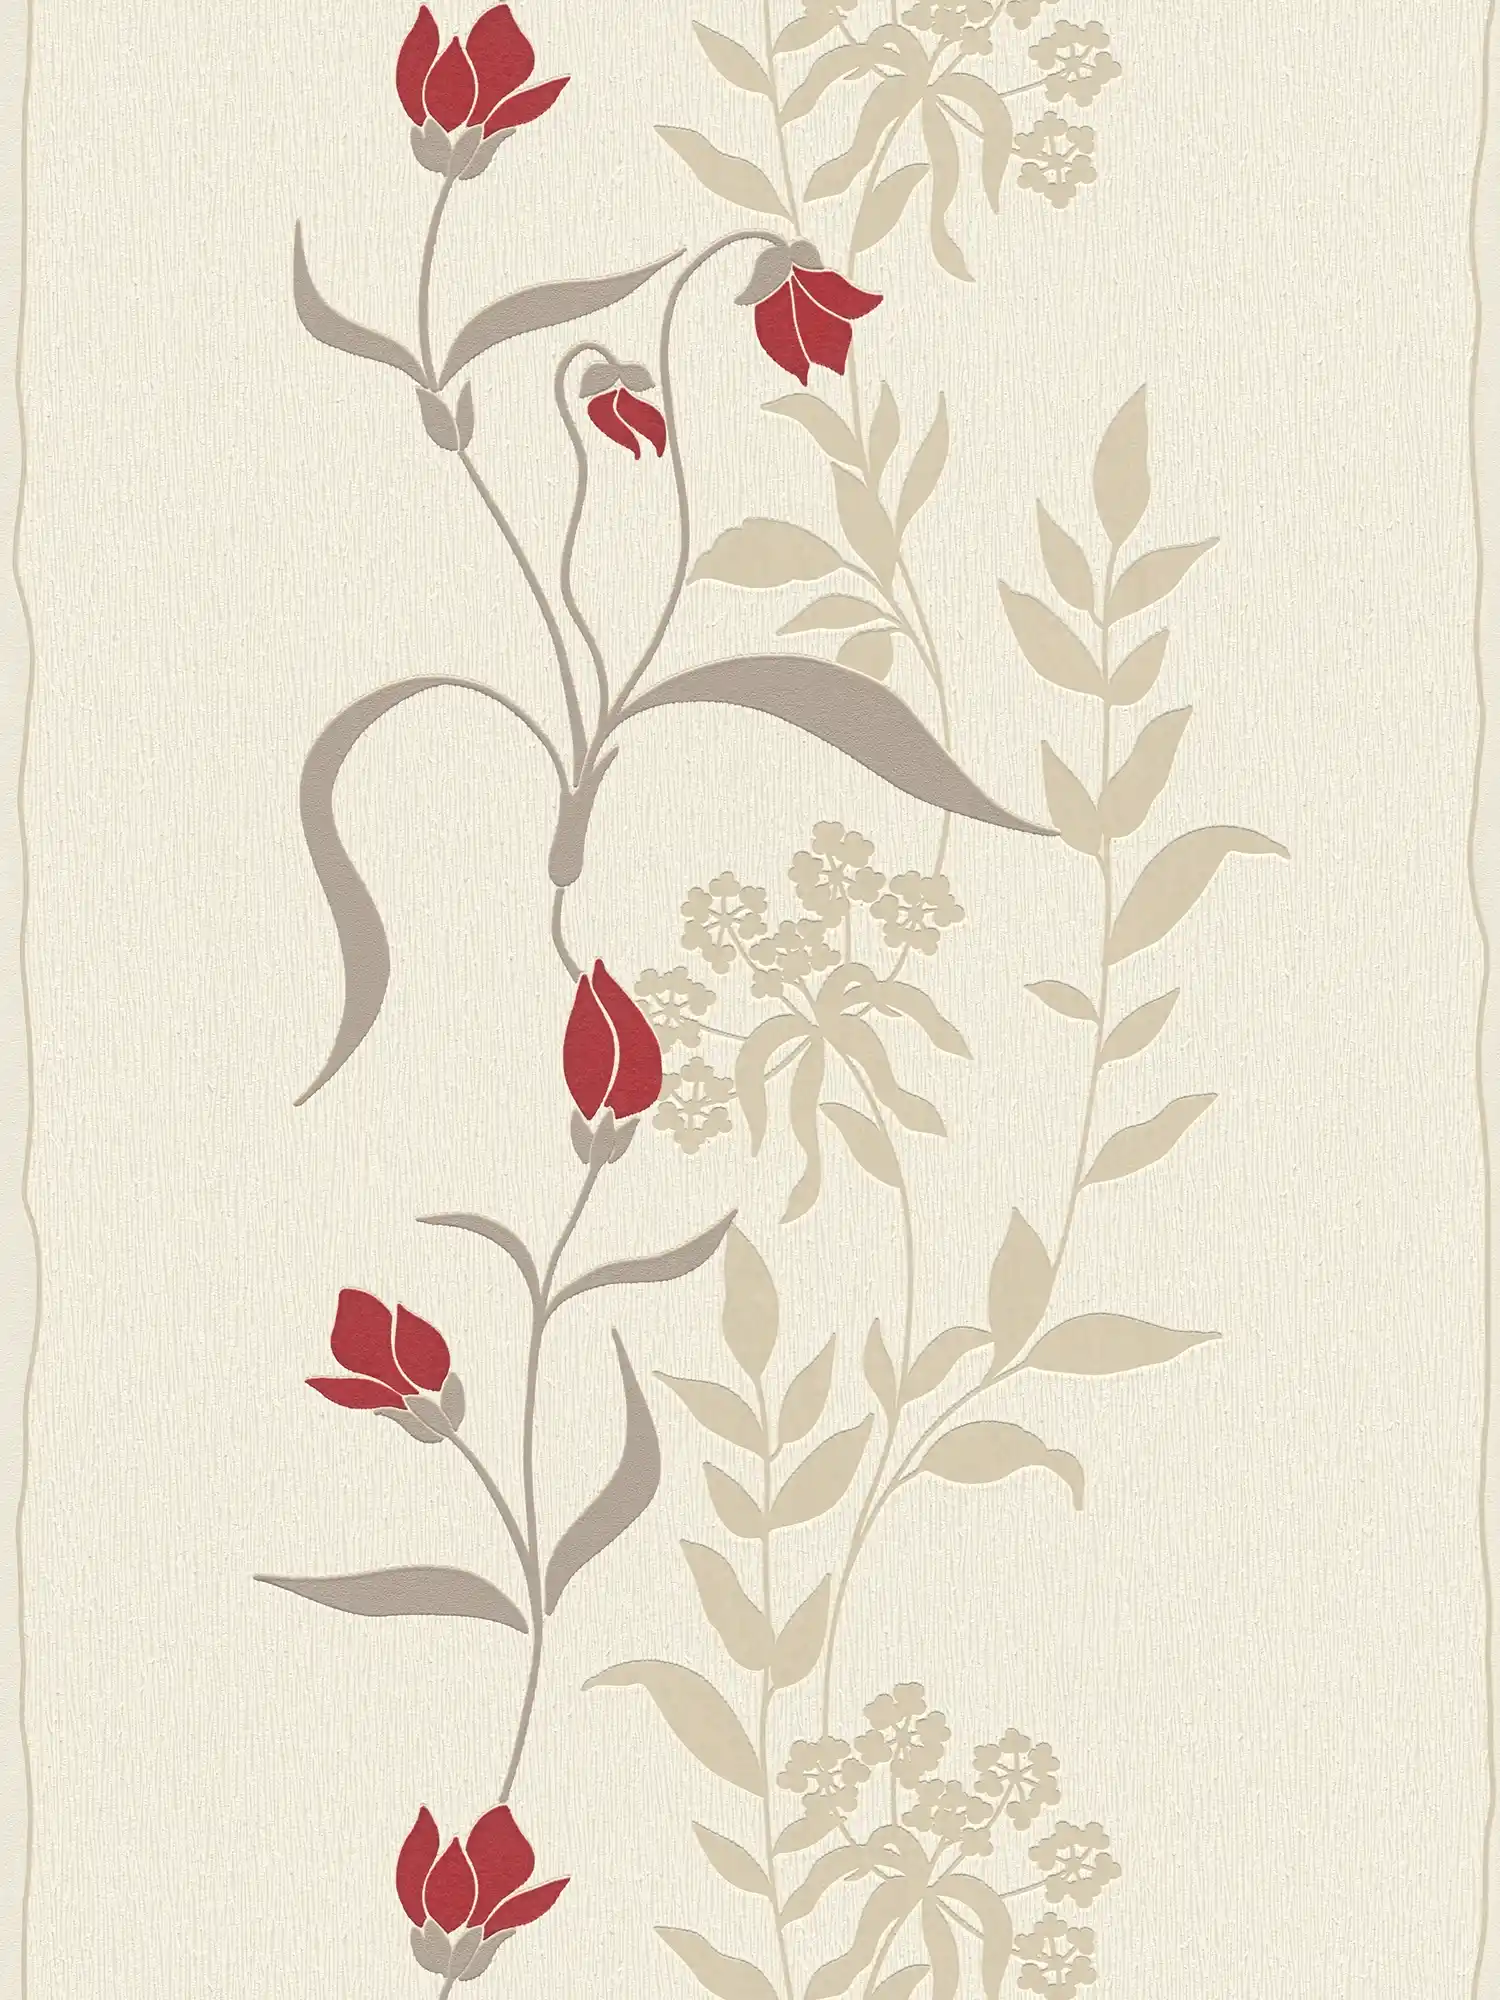 Wohnzimmer Tapete mit Blumen Ranken – Beige, Braun, Rot
